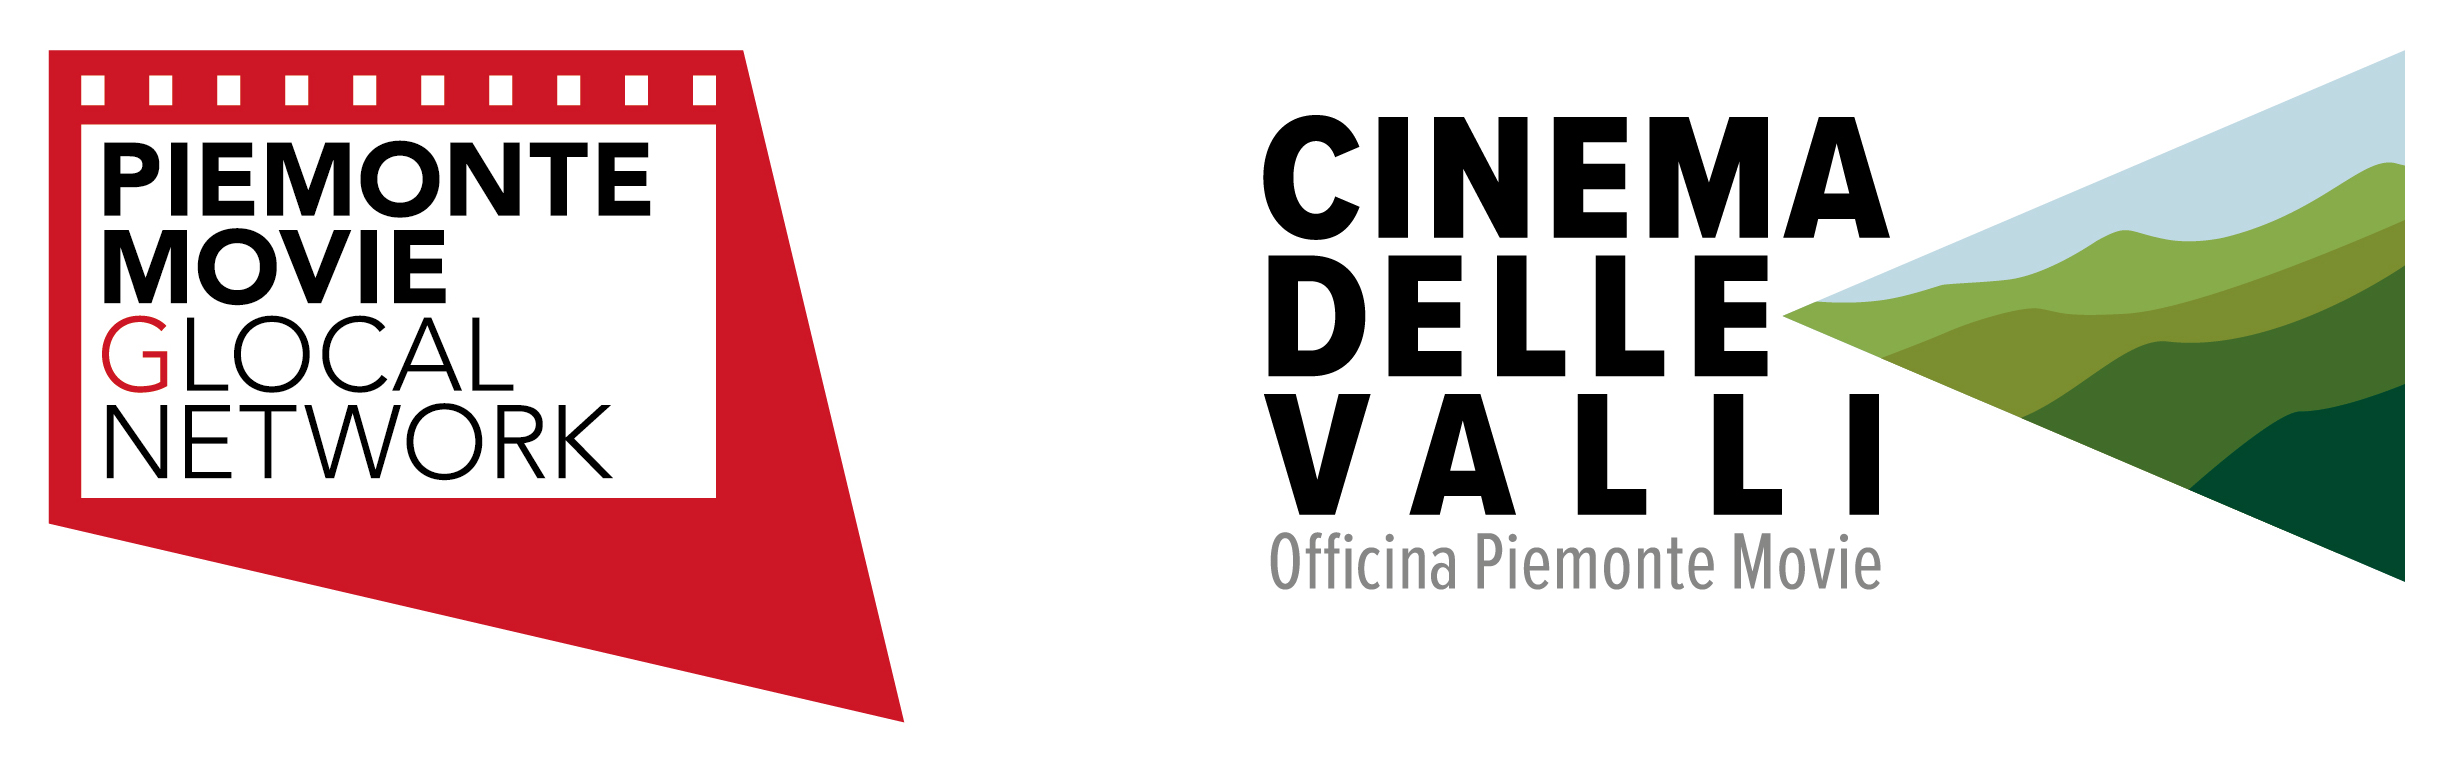 Piemonte Movie - Cinema delle Valli